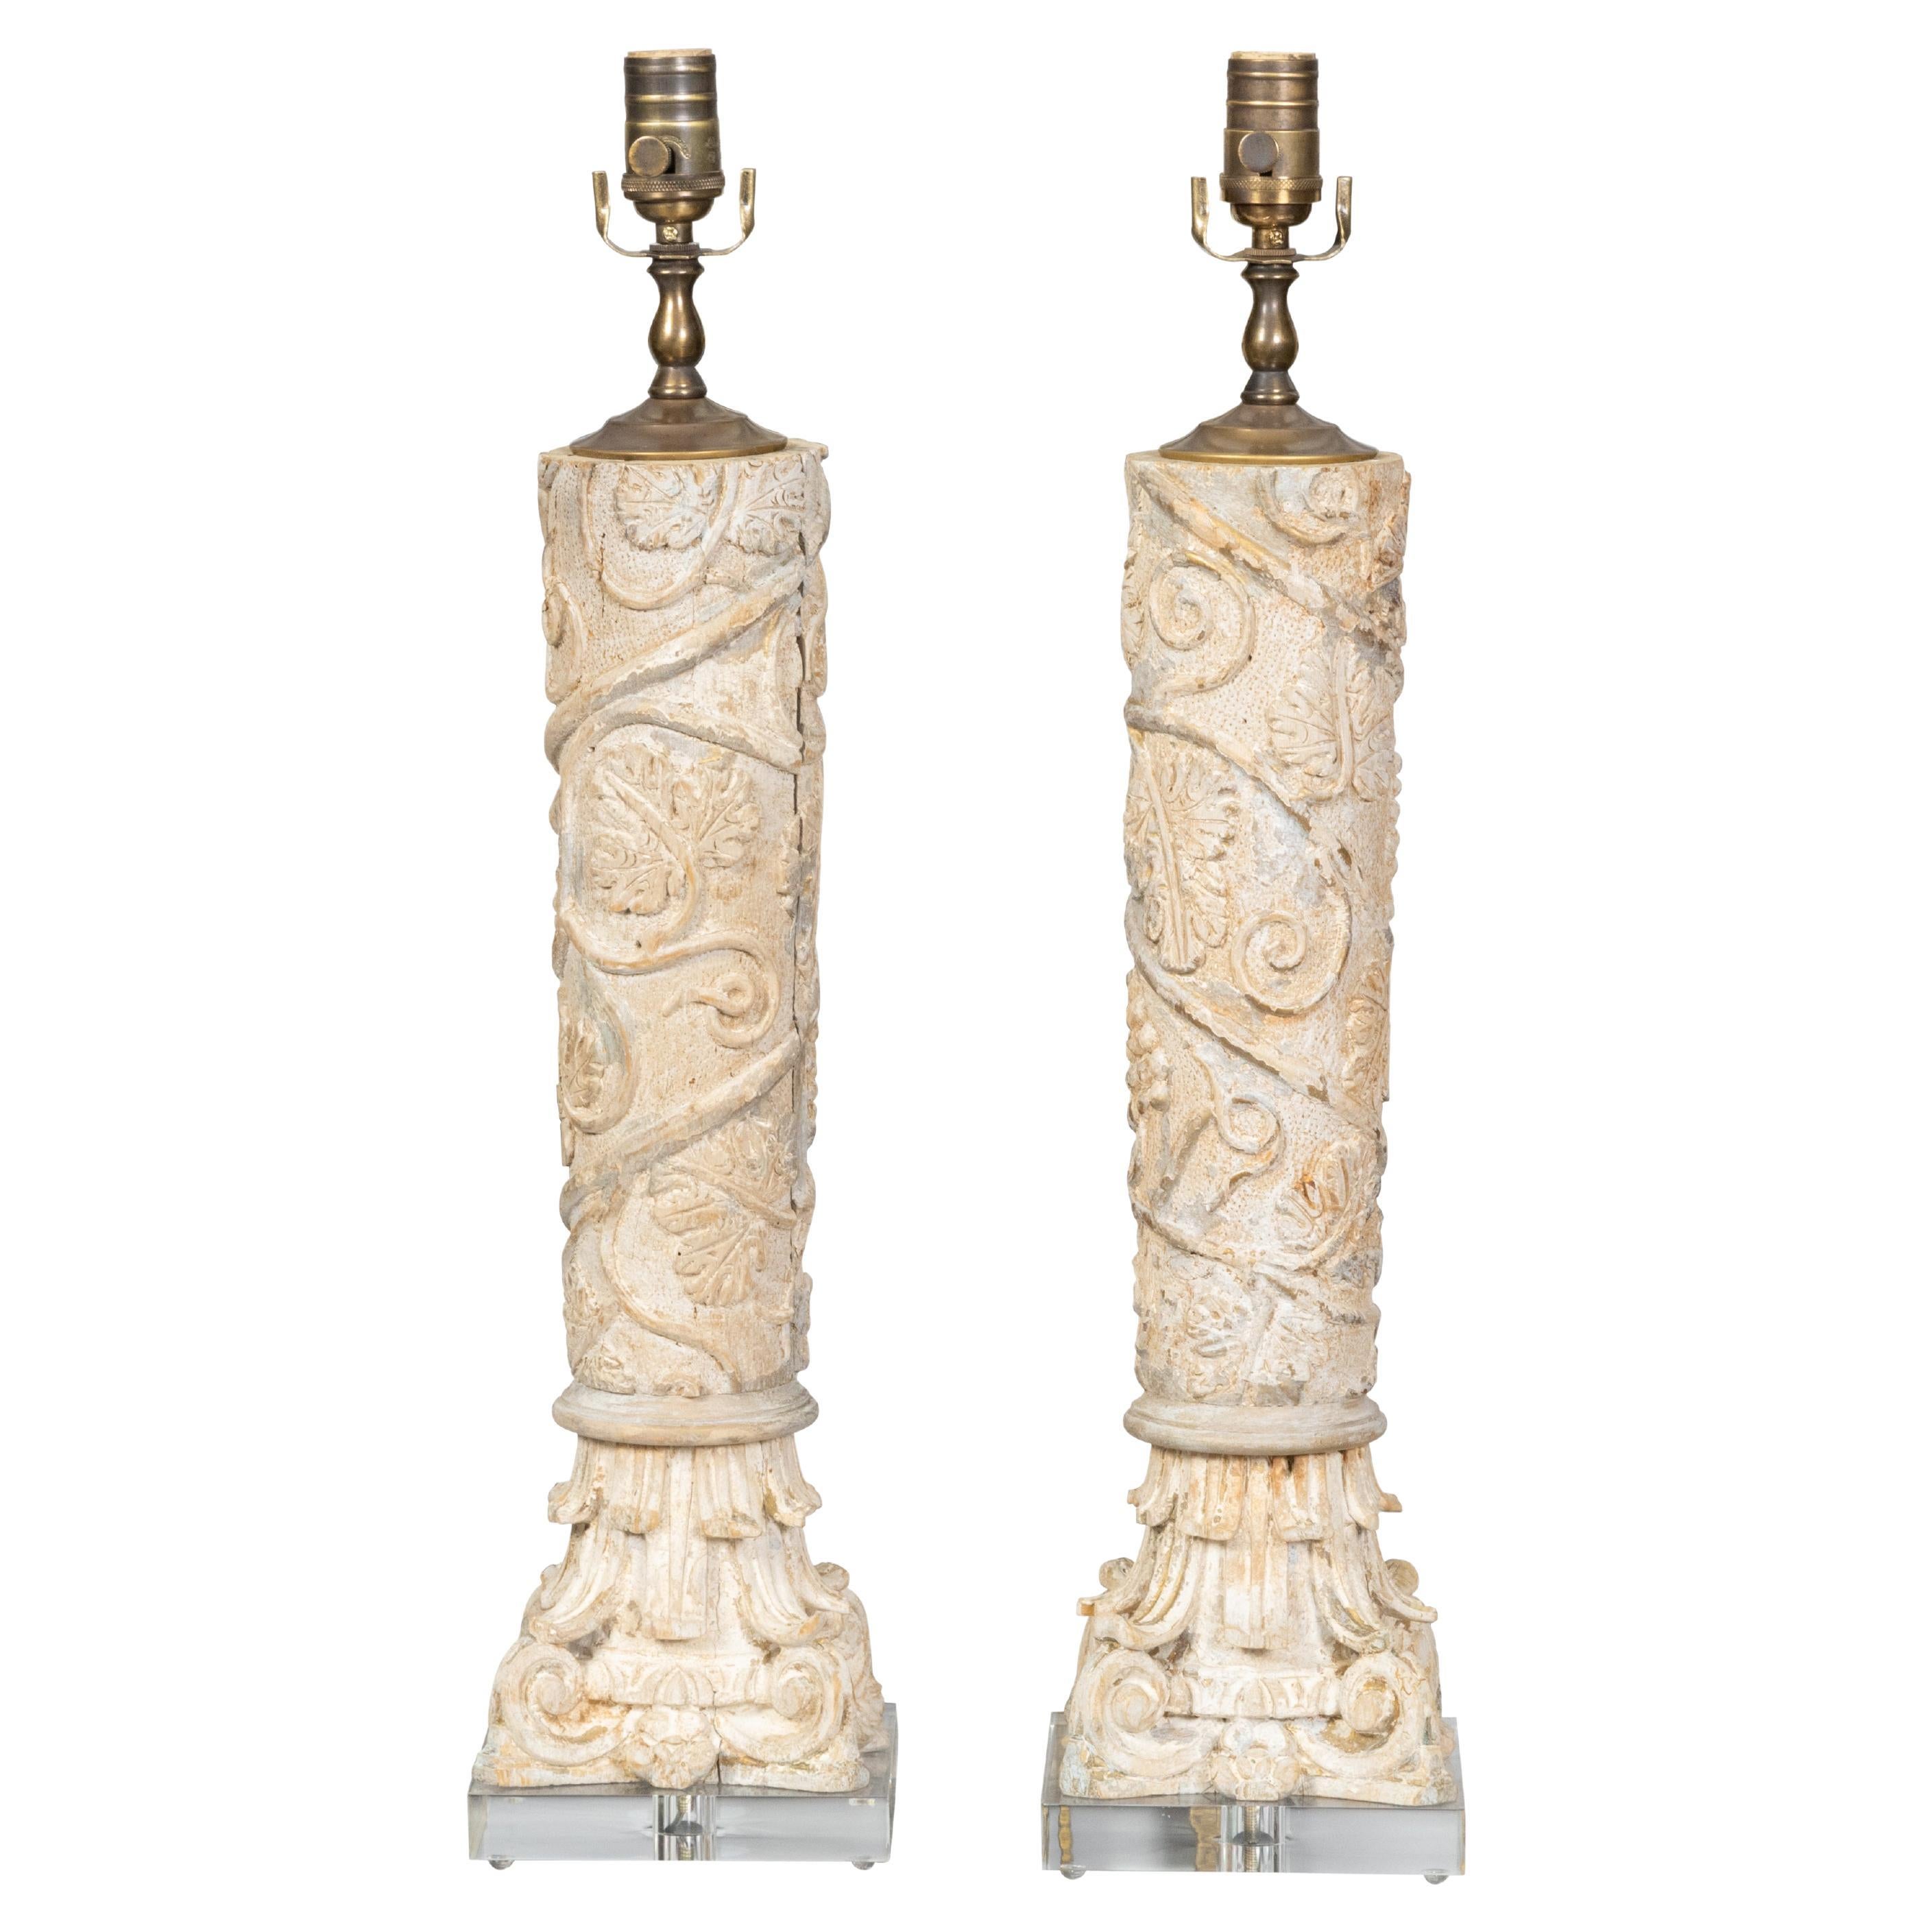 Paire de fragments de bois sculptés de style classique italien transformés en lampes de bureau